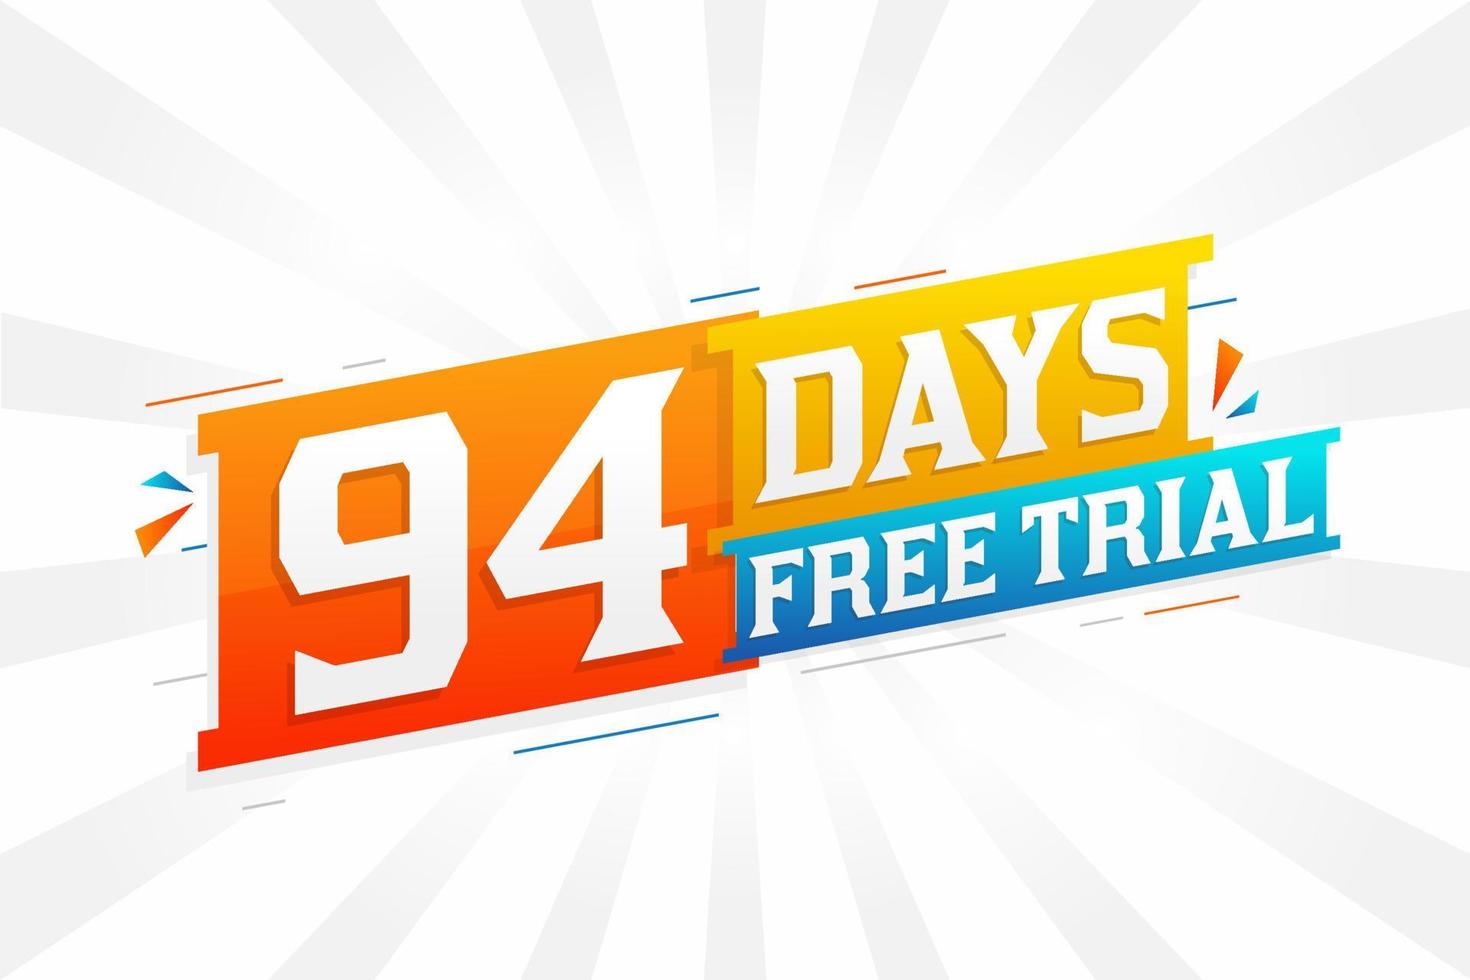 94 jours d'essai gratuit vecteur de stock de texte promotionnel en gras